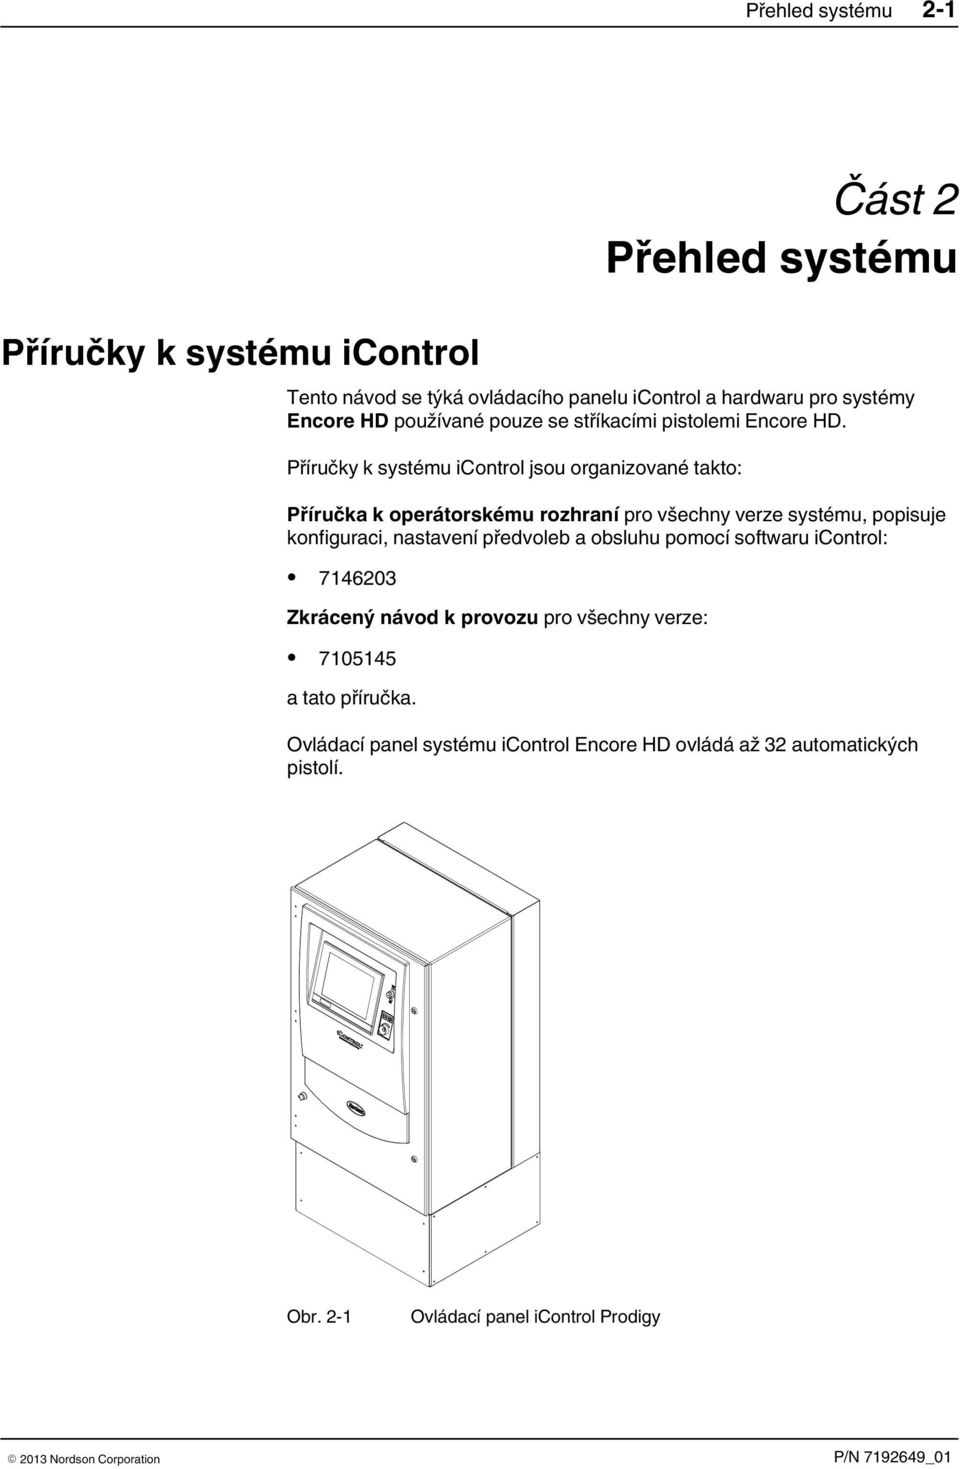 Příručky k systému icontrol jsou organizované takto: Příručka k operátorskému rozhraní pro všechny verze systému, popisuje konfiguraci, nastavení